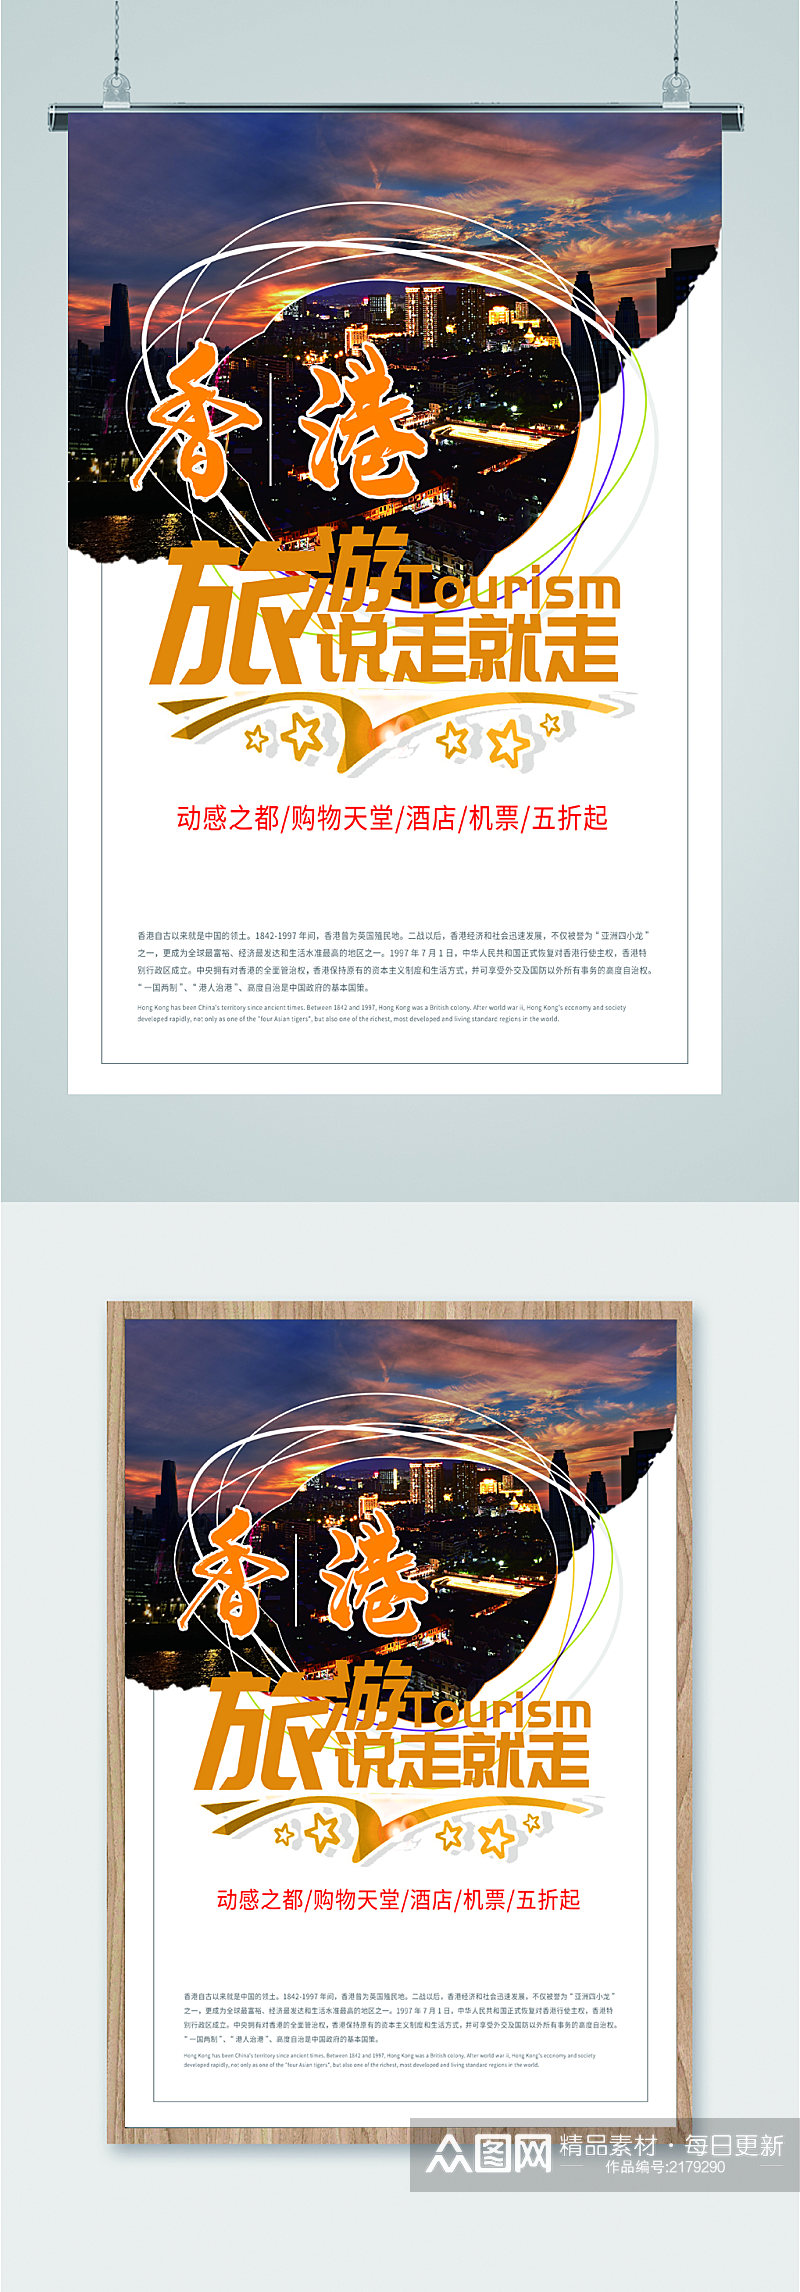 香港风情旅游海报素材